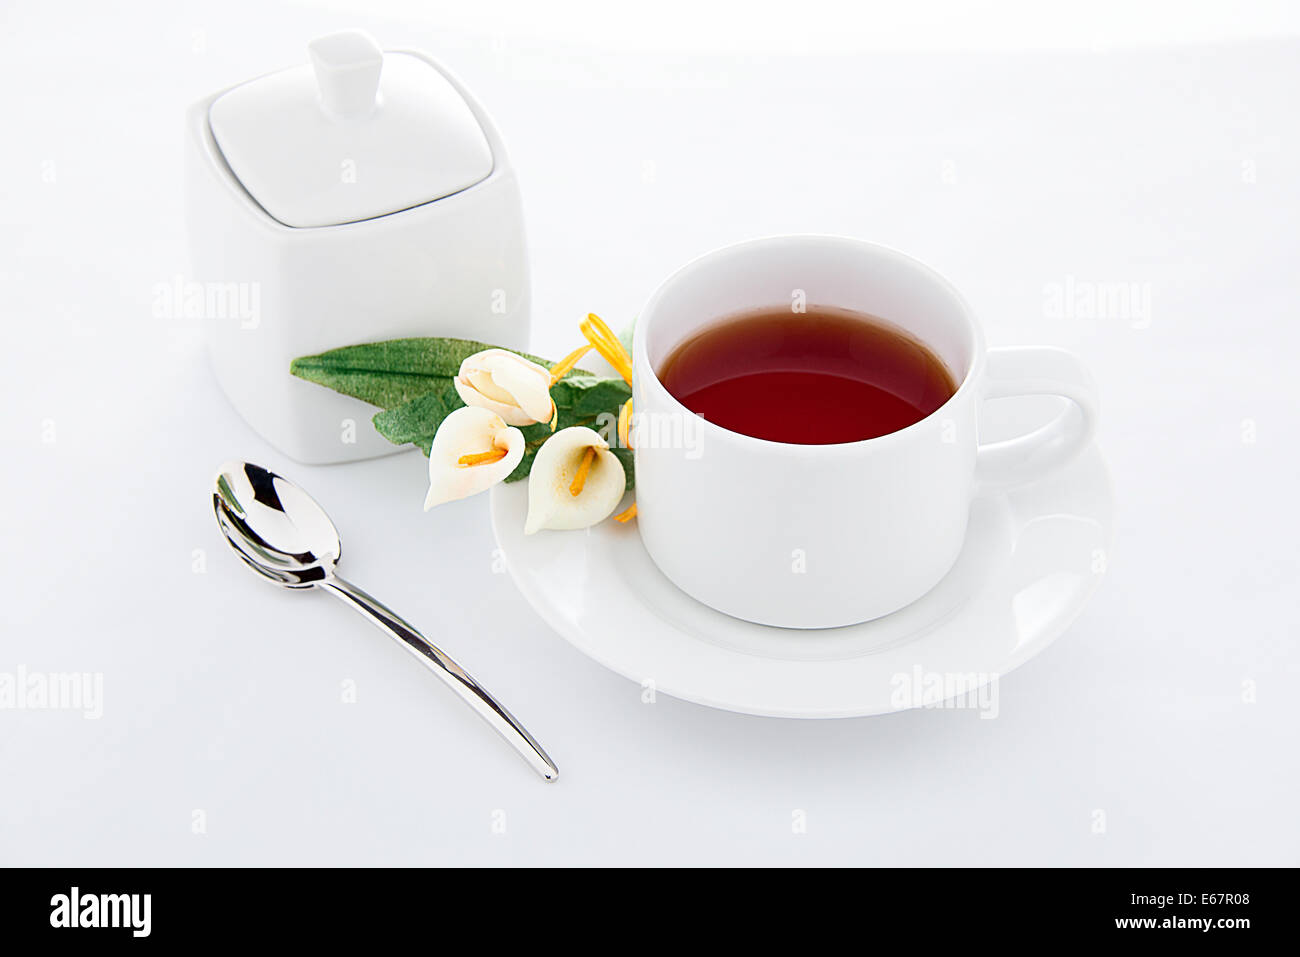 L'heure du thé - une tasse de thé avec du sucre et des fleurs en pot Banque D'Images